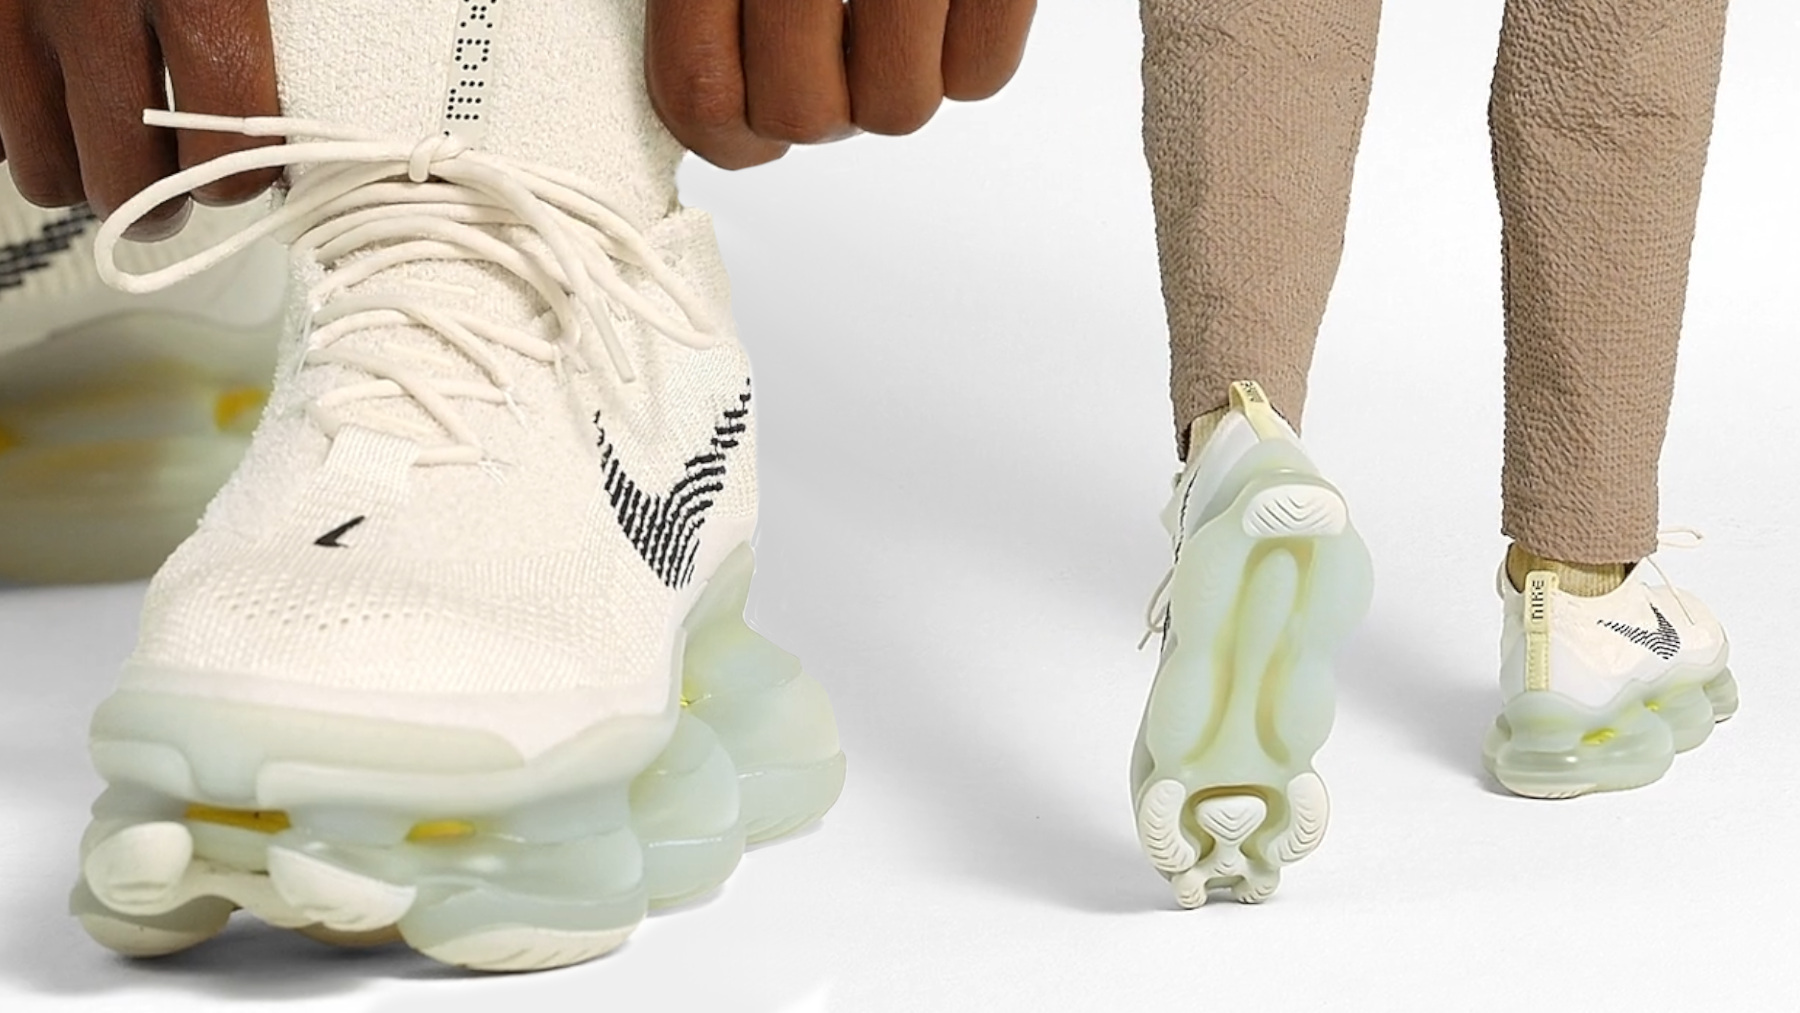 ¡Chollazo!: estas zapatillas Nike de diseño futurista ahora están rebajadas a mitad de precio